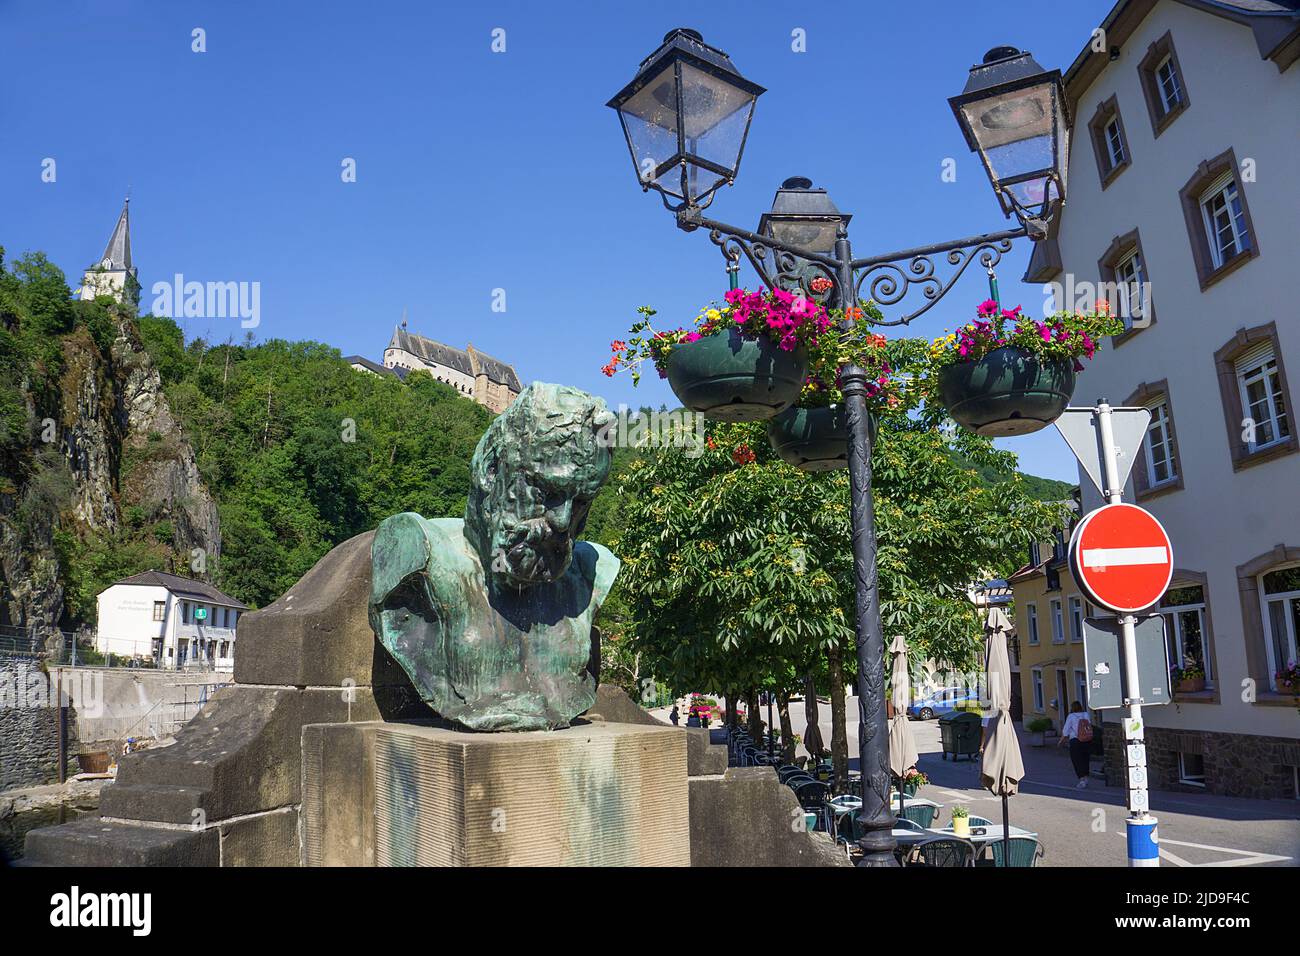 Vue depuis notre pont jusqu'au château, buste de Victor Hugo et ancien feu de rue, village de Vianden, canton de Vianden, Luxembourg, Europe Banque D'Images